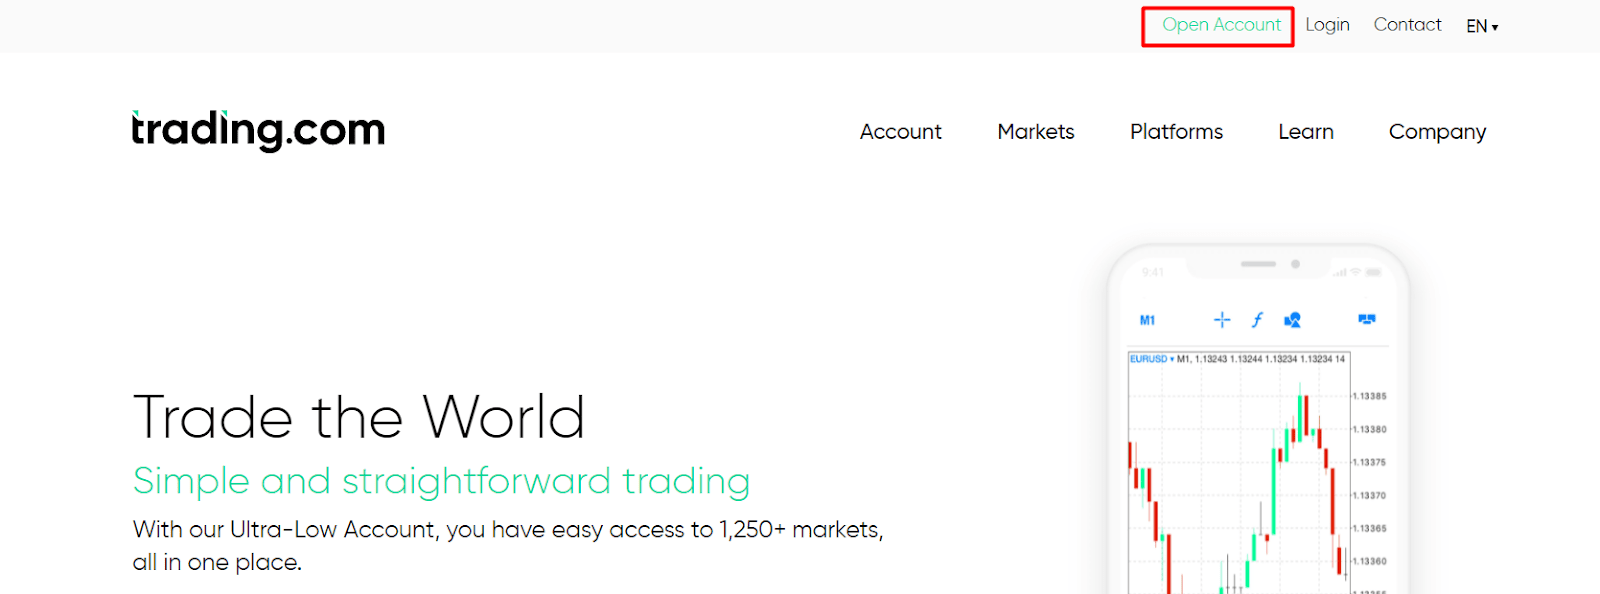 Trading.com Přehled - Otevření účtu